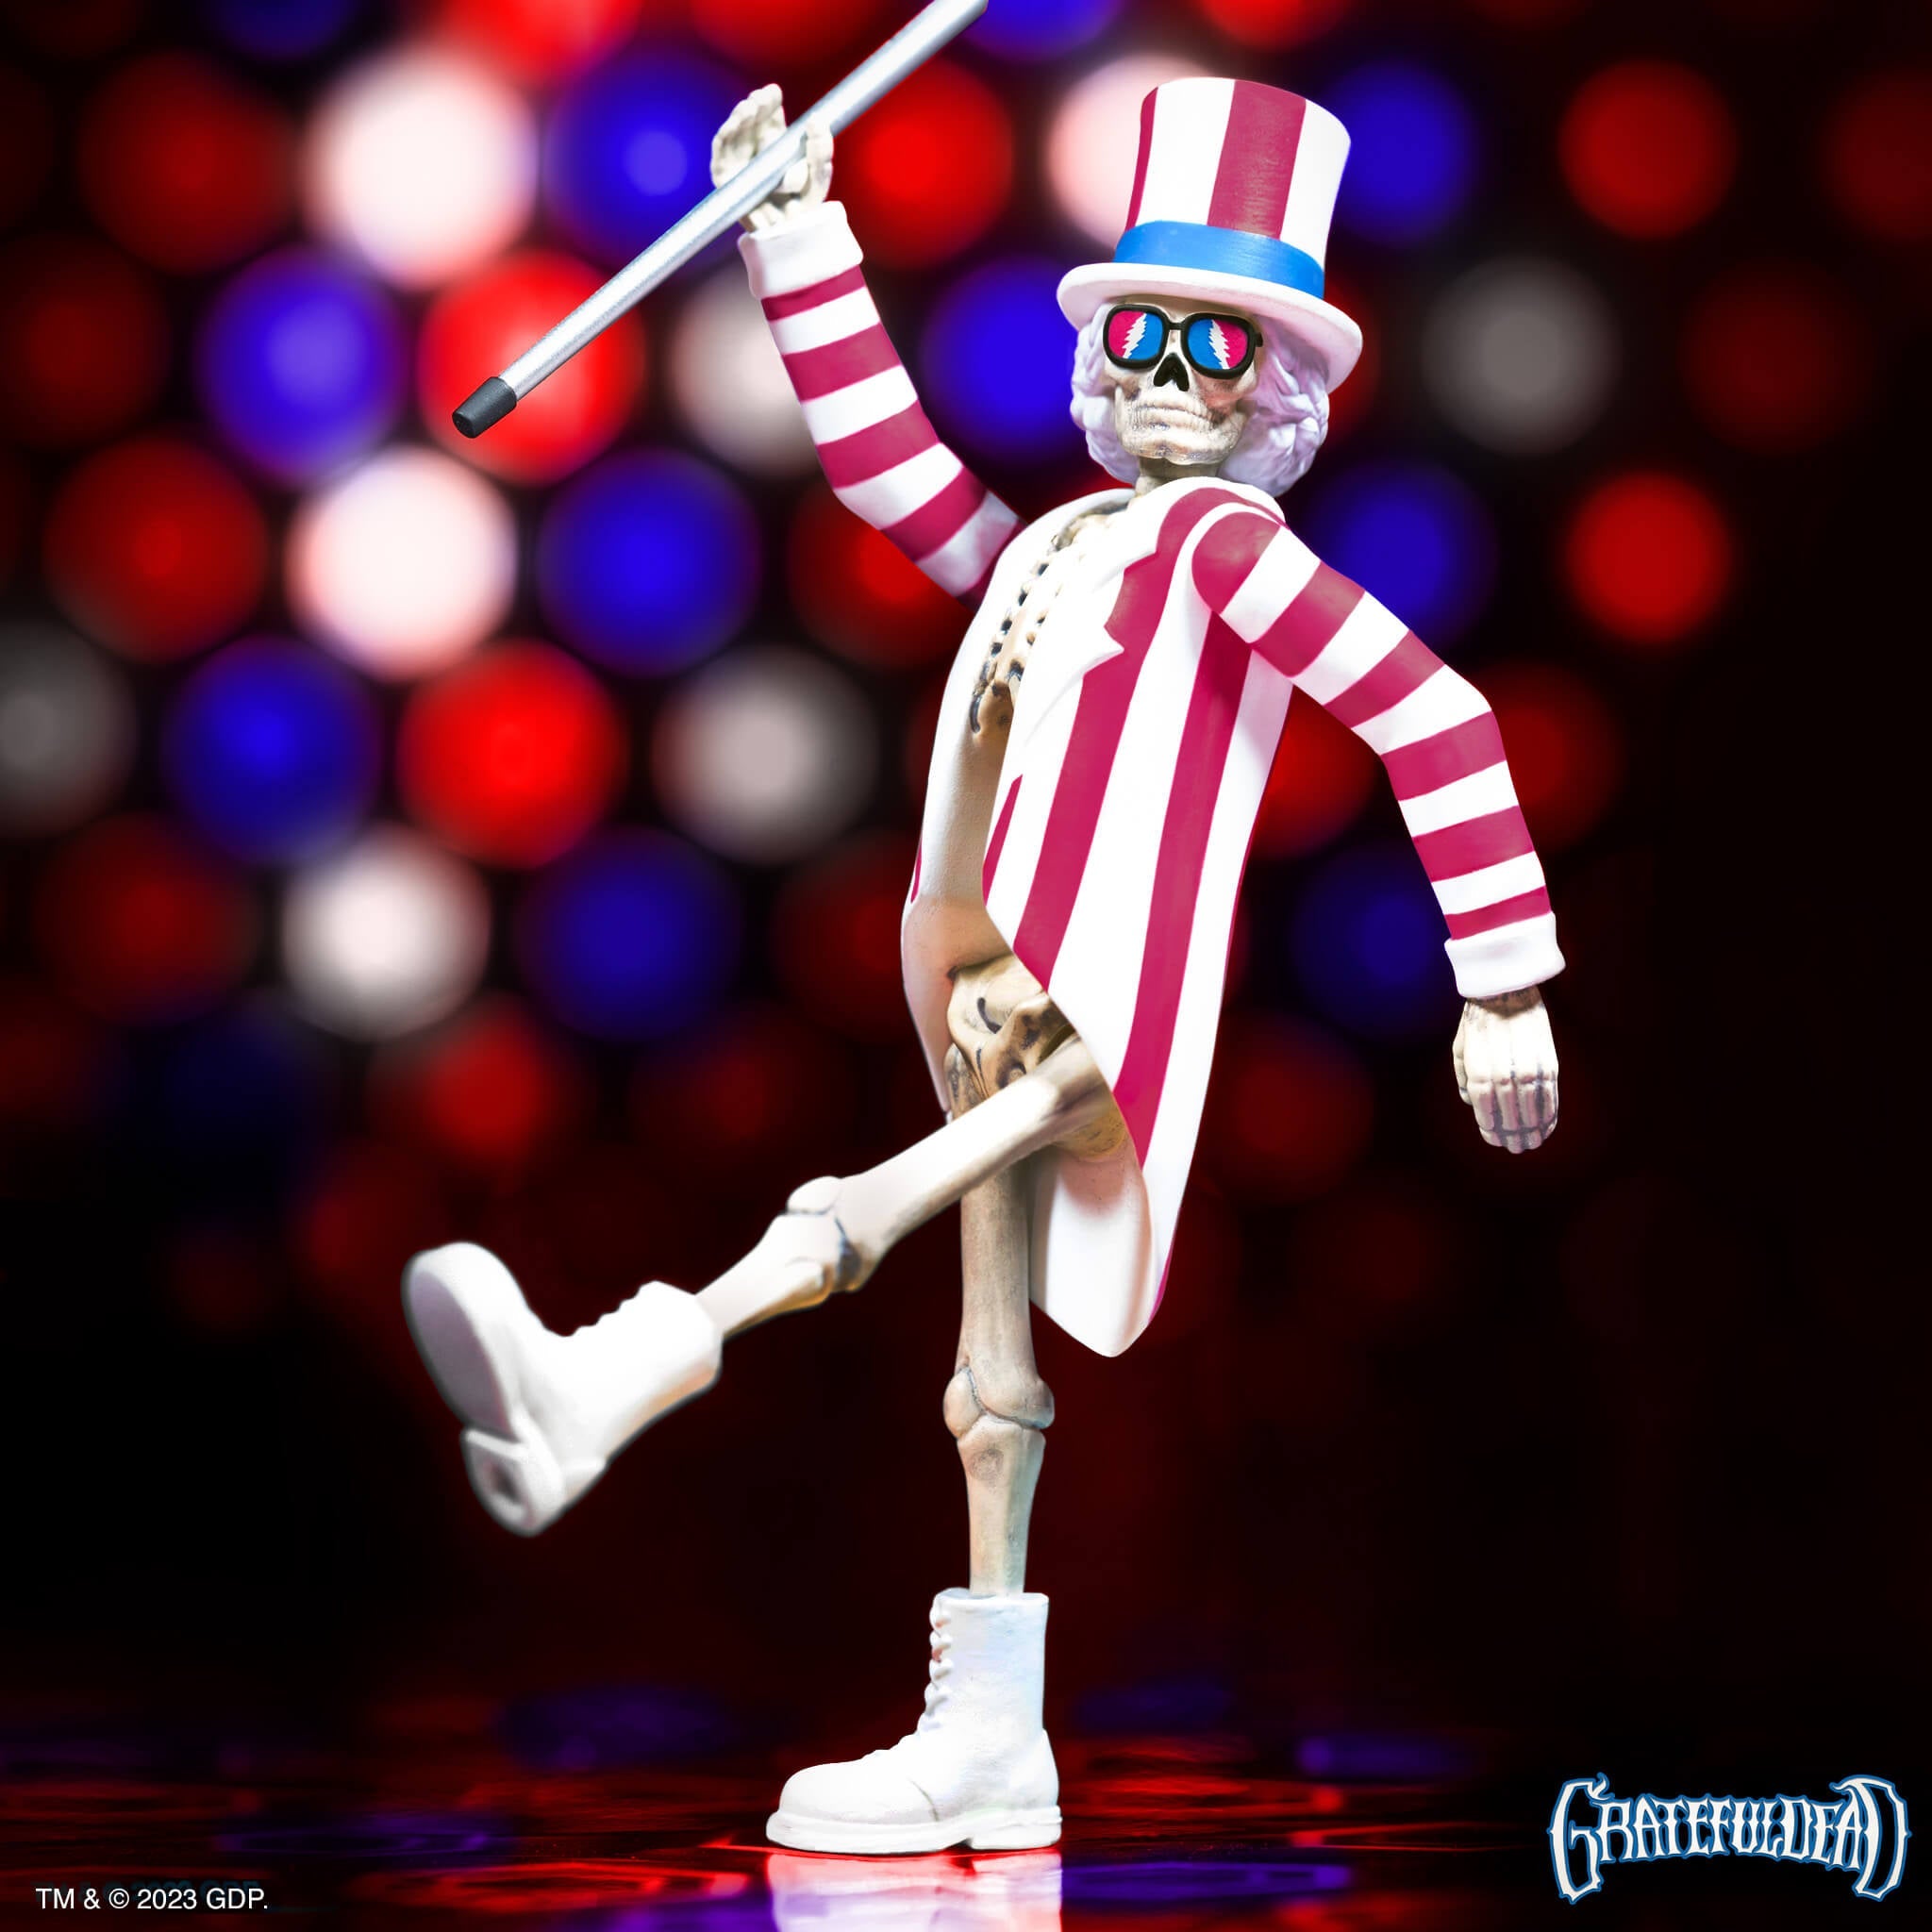 Grateful Dead Action Figure Release: $12 Uncle Sam Skeleton on